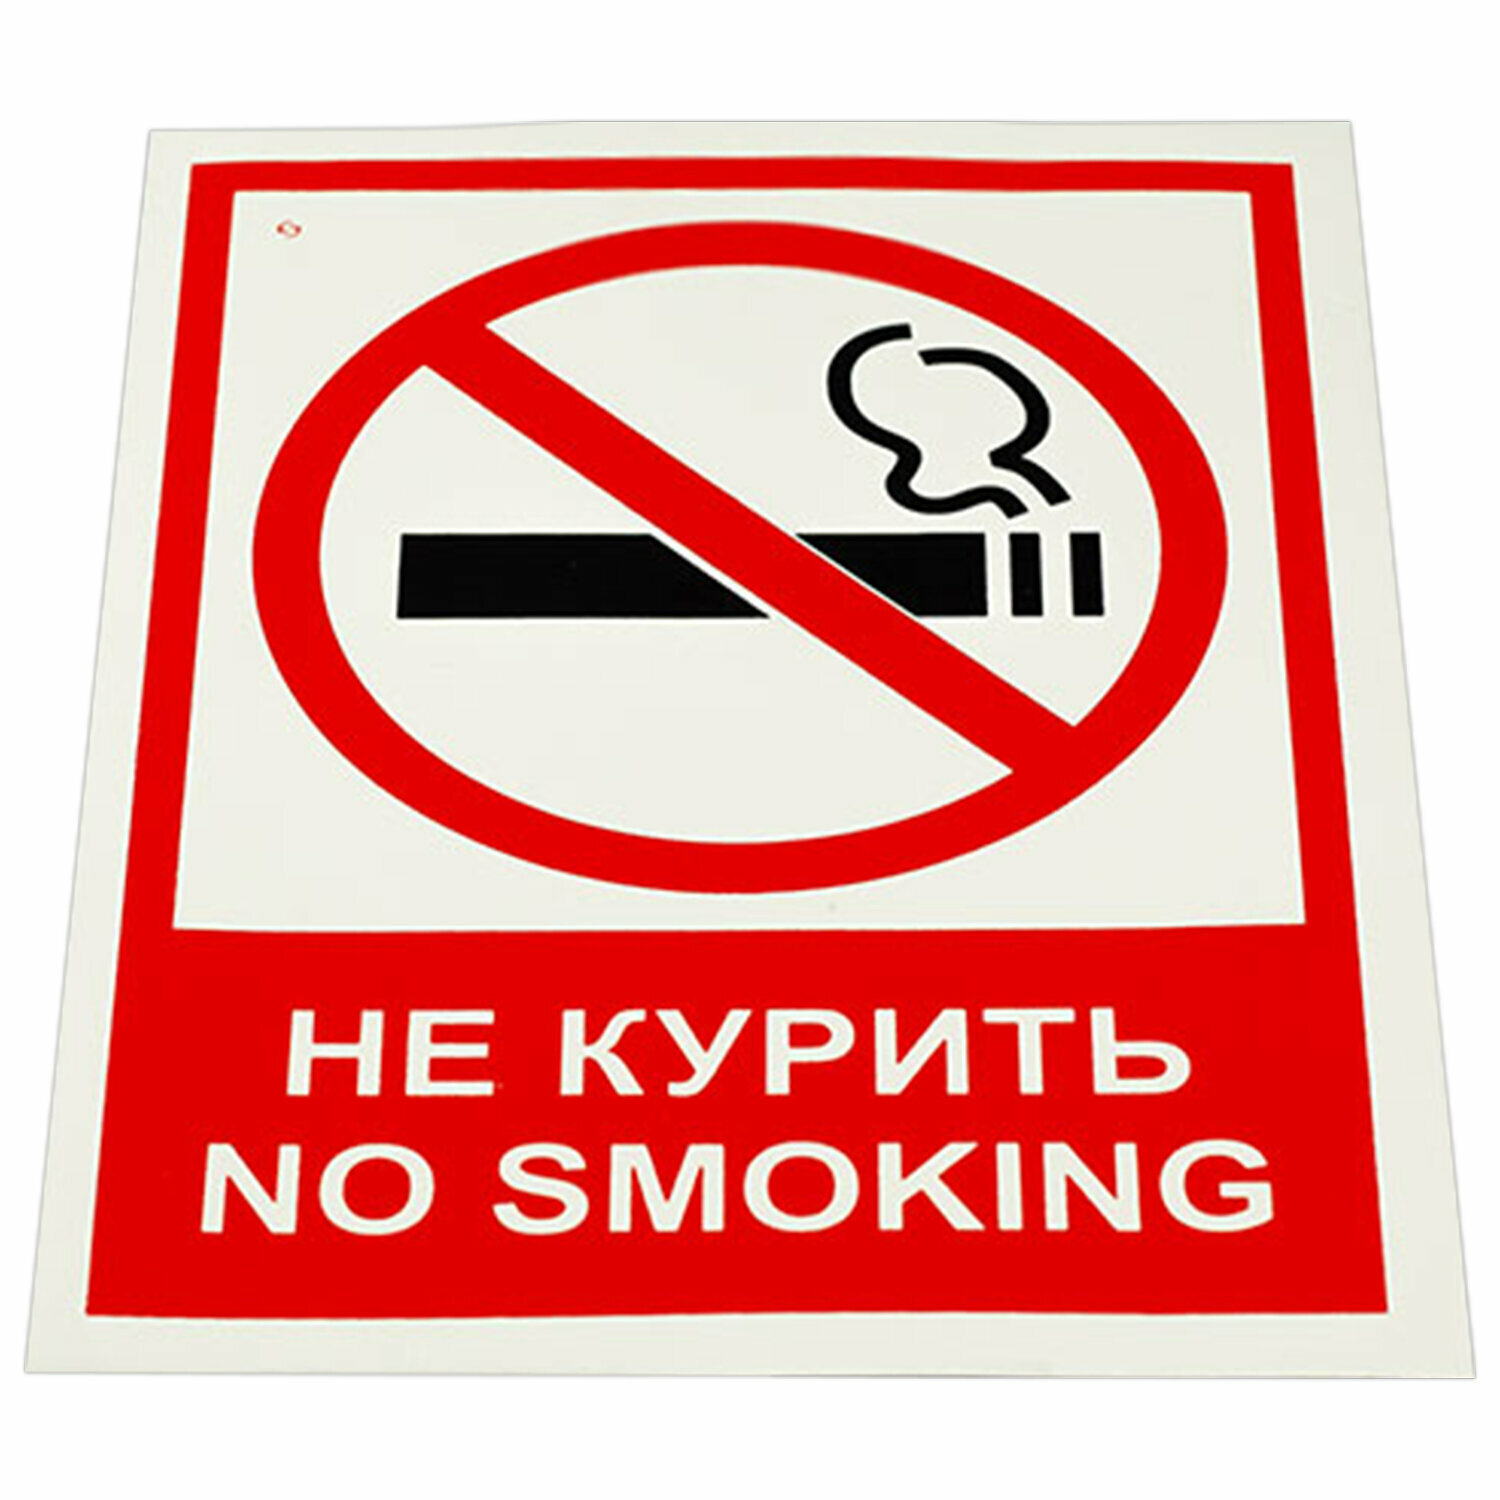 Знак вспомогательный «Не курить. No smoking» комплект 5 шт 150×200 мм пленка самоклеящаяся V 51